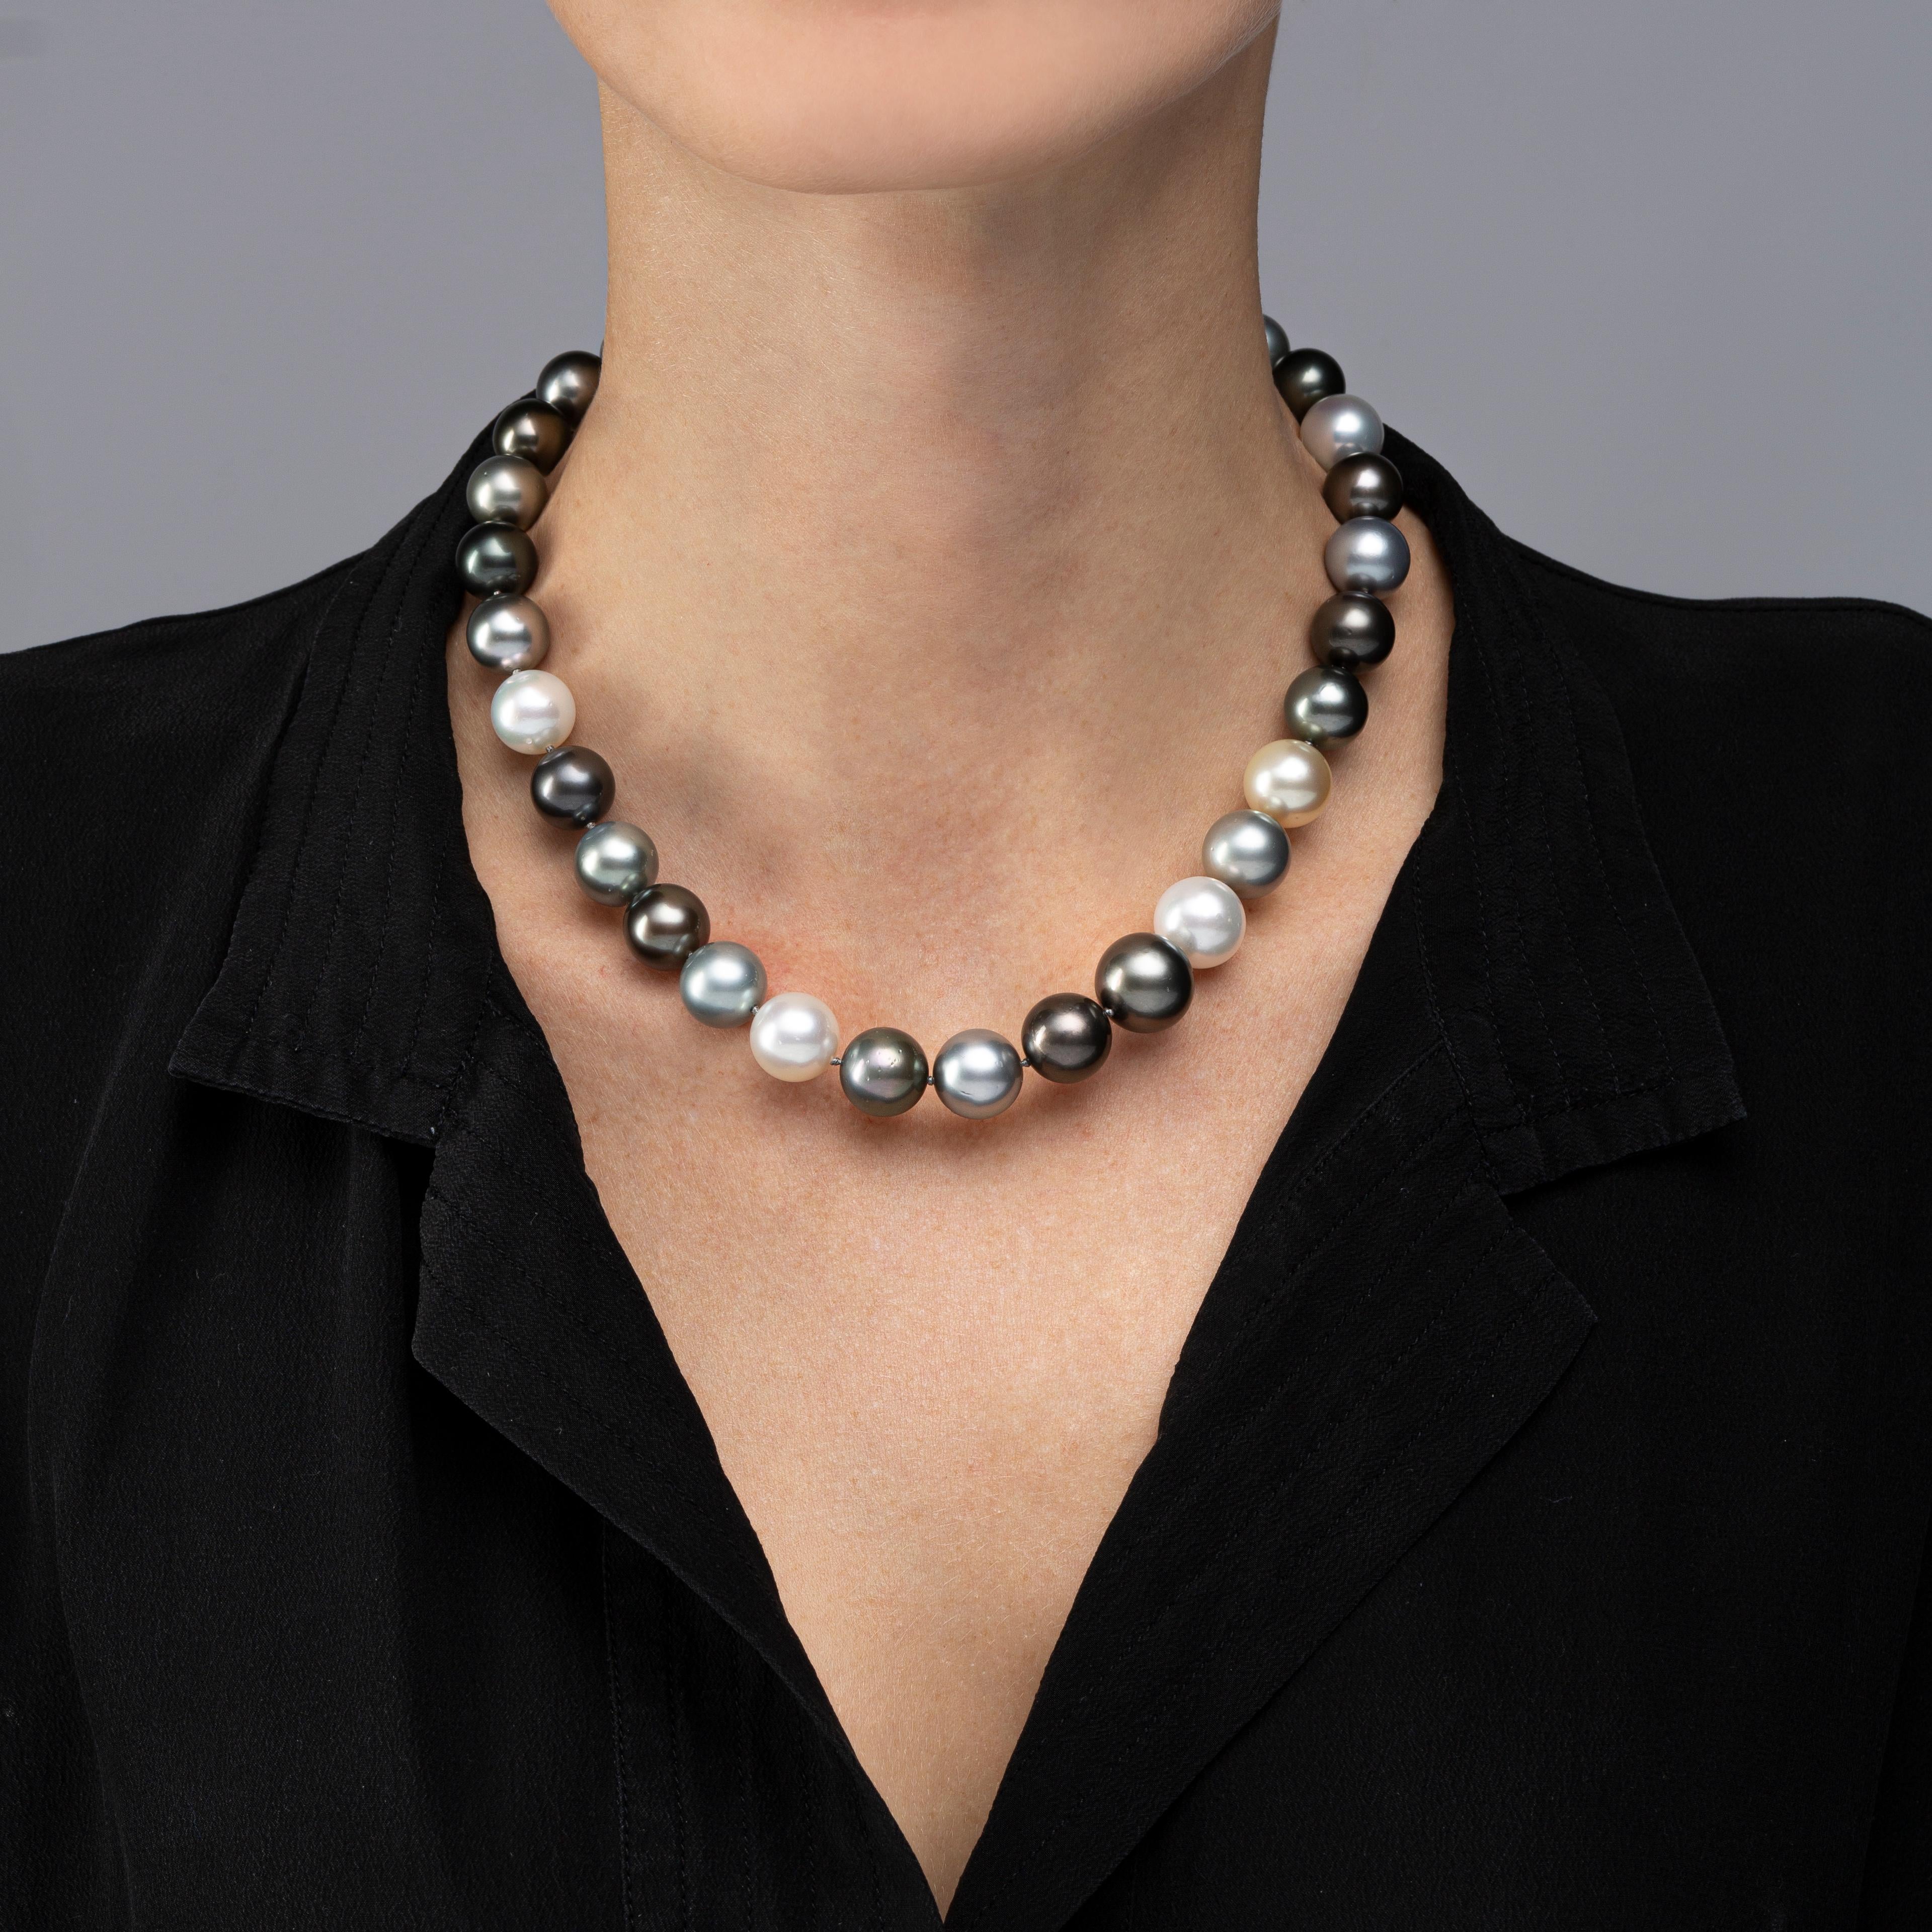 Alex Jona Collection, siebzehn Zoll lange Halskette bestehend aus dreiunddreißig, 0,47 - 0,55 in. / 11,9-13,9 mm, weiße, hellgraue und schwarze Südseeperlen, die Perlen sind mit einer unsichtbaren Schließe aufgereiht. Perlenqualität: AA,
Perlglanz: